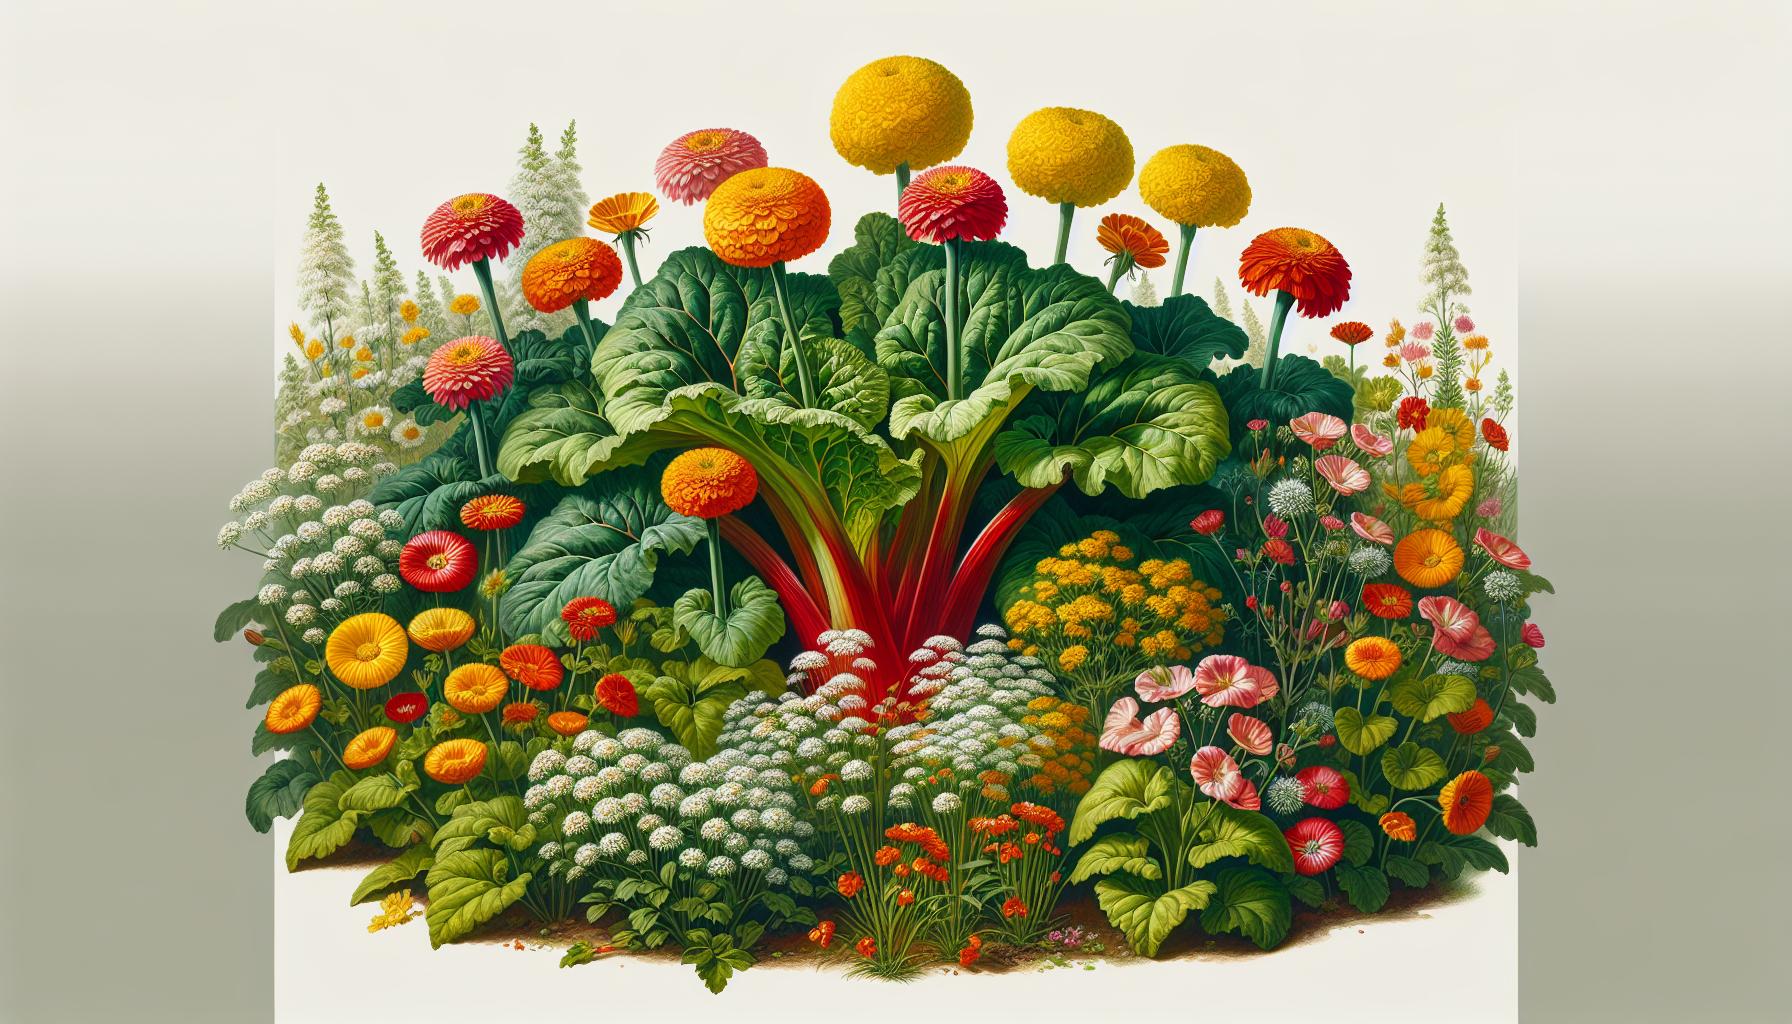 colorful vegetable arrangement art